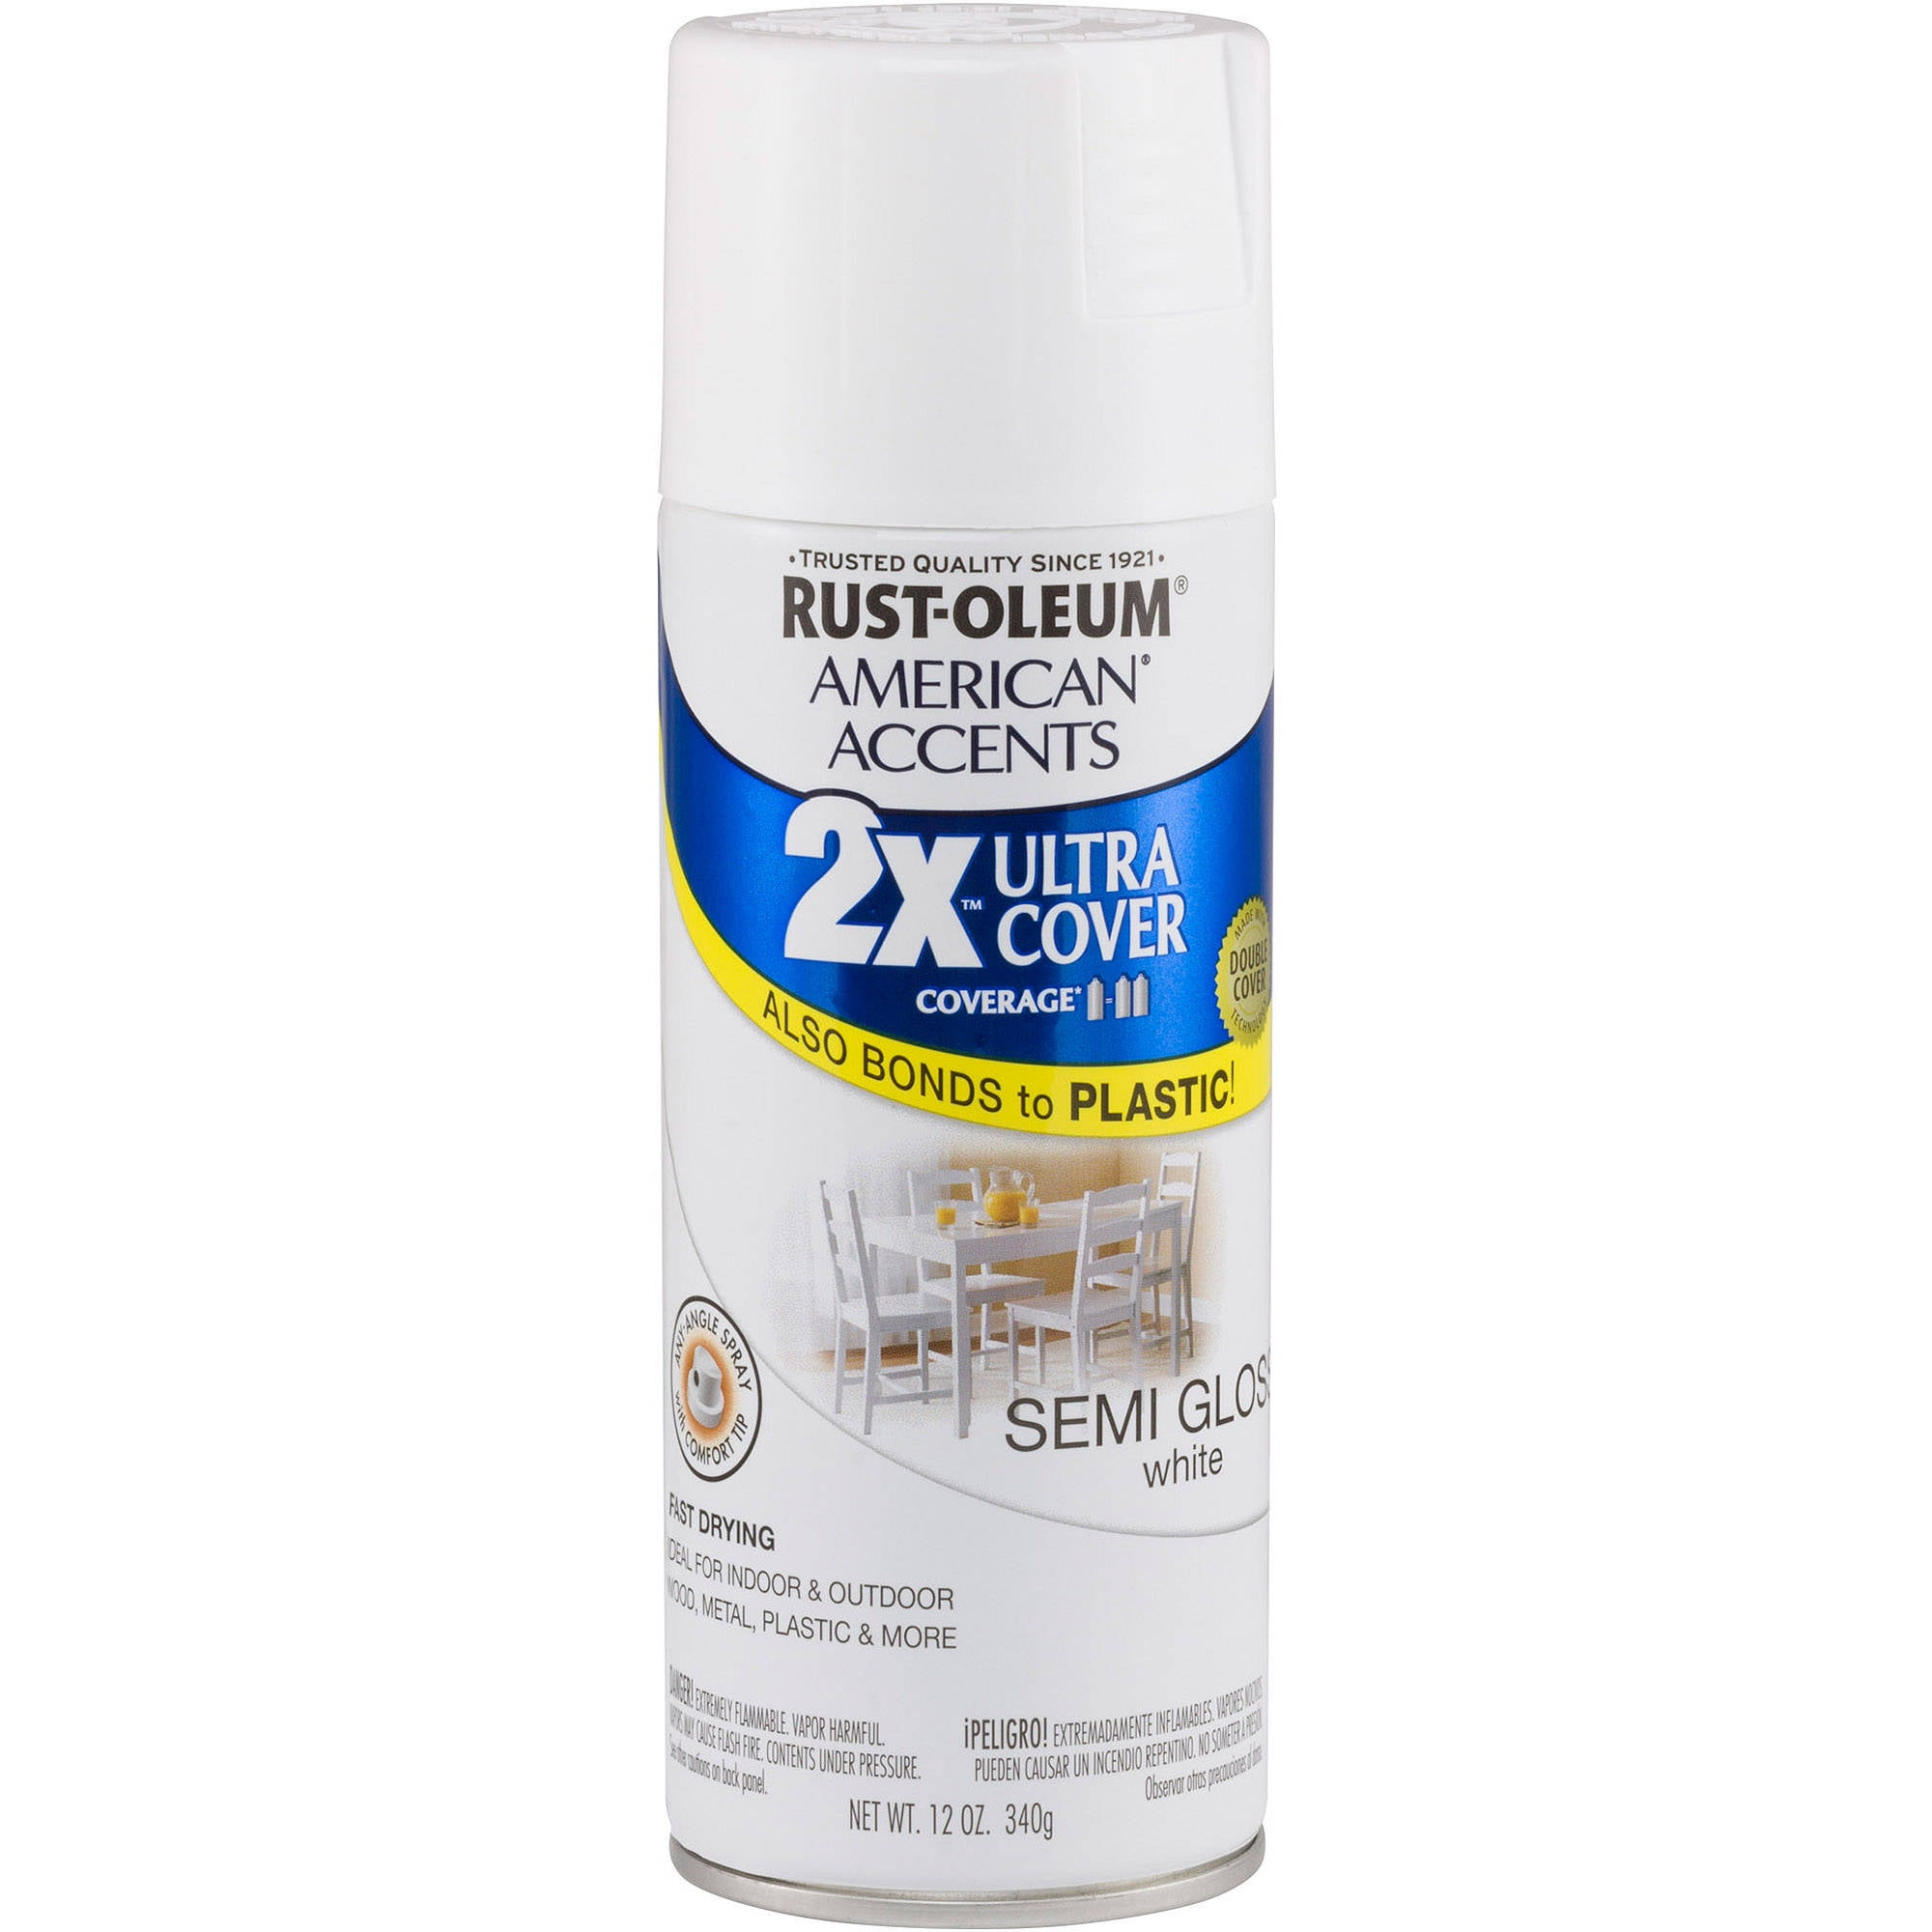 Rust-Oleum PROFESSIONAL Primer Spray – 15 oz